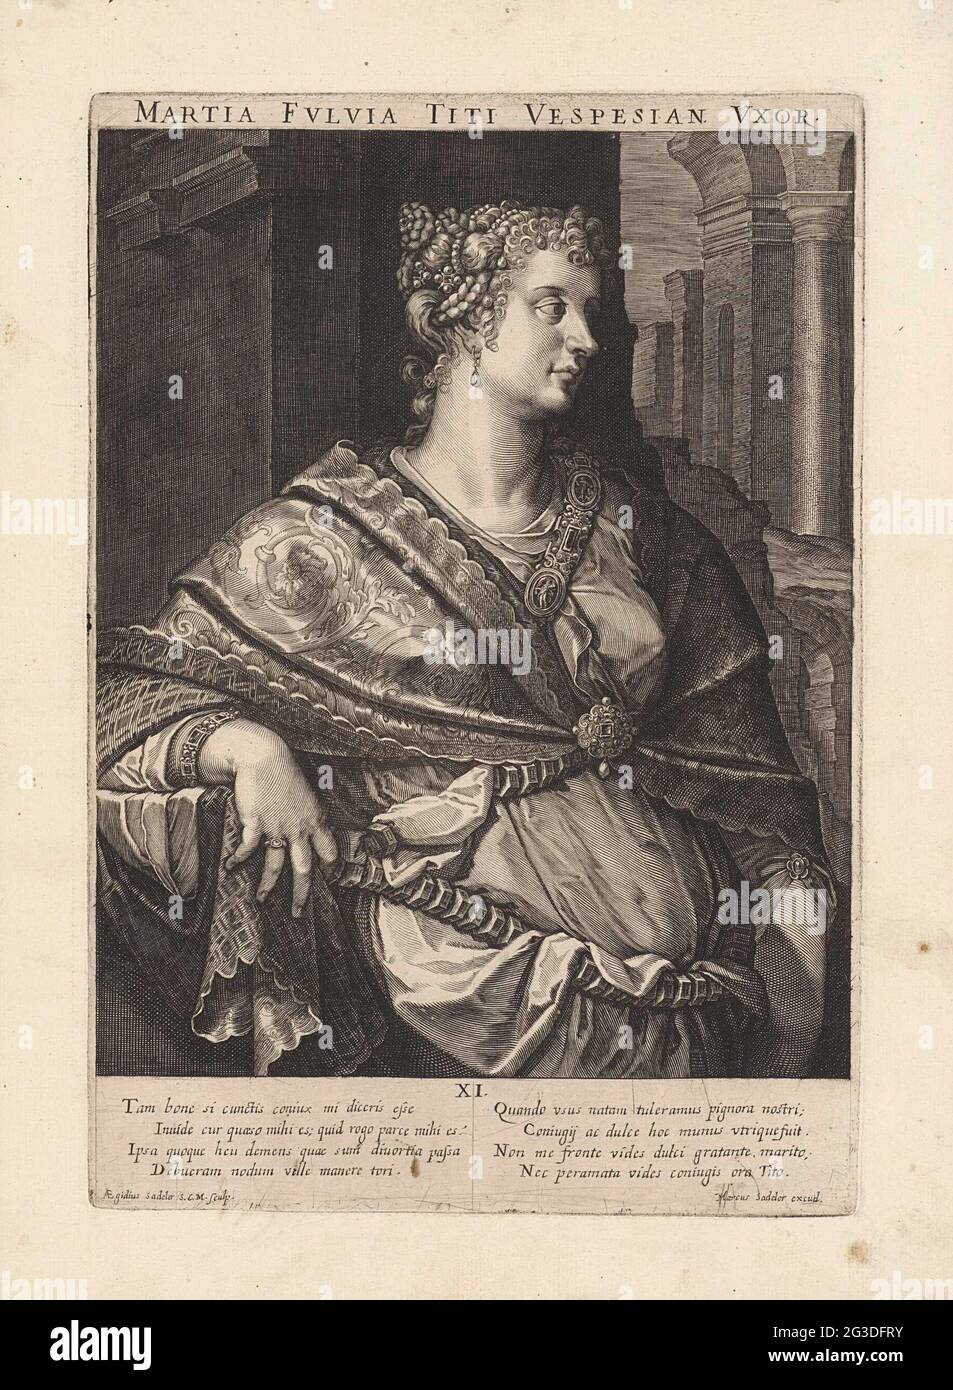 Portrait of Marcia Furnilla; Famous Roman women. Marcia Furnilla, second wife of Emperor Titus. Stock Photo